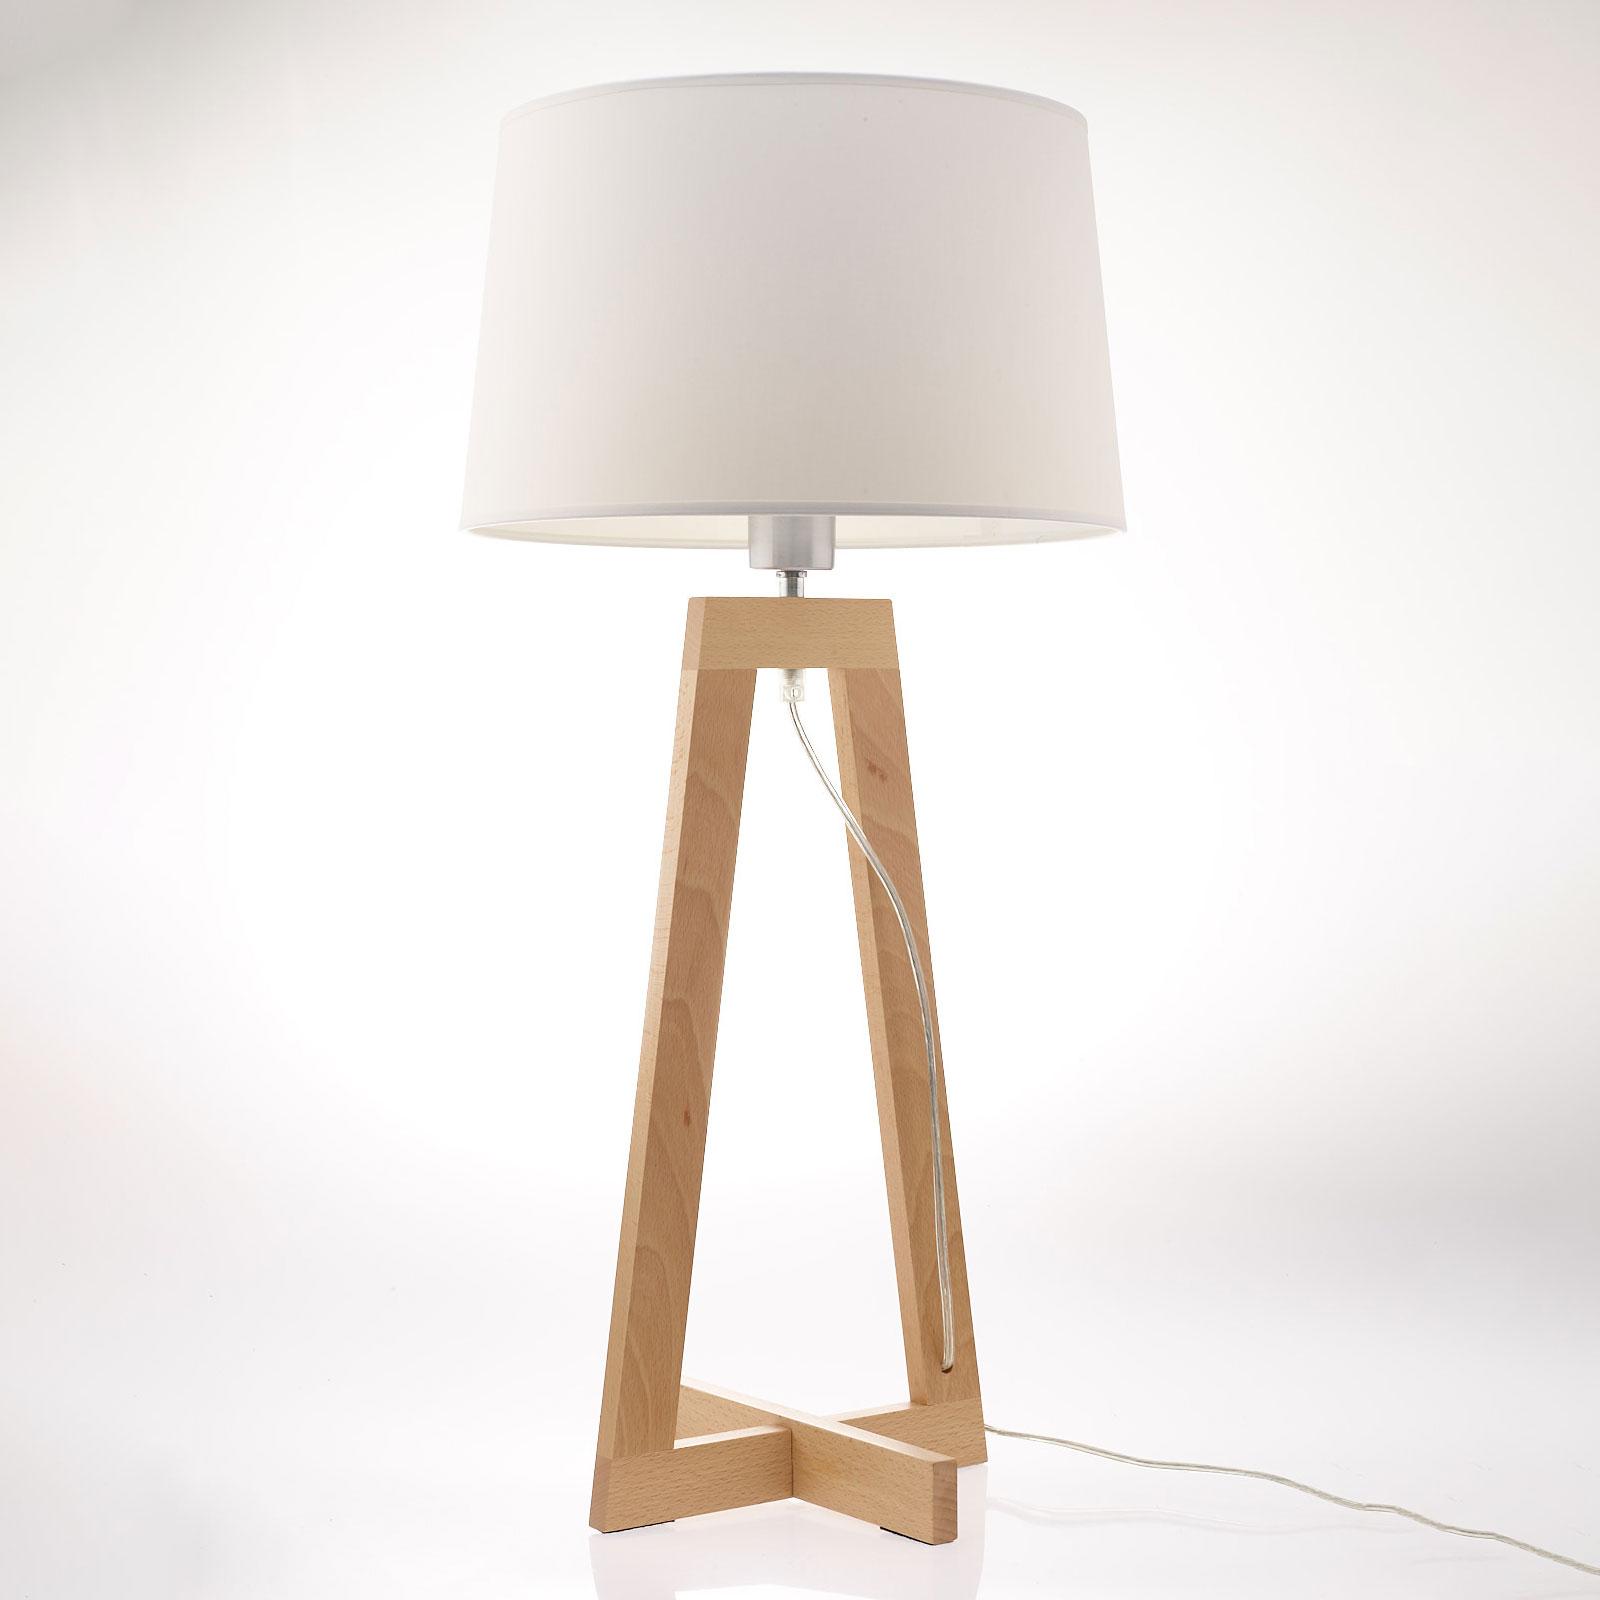 Sacha LT asztali lámpa textilből és fából